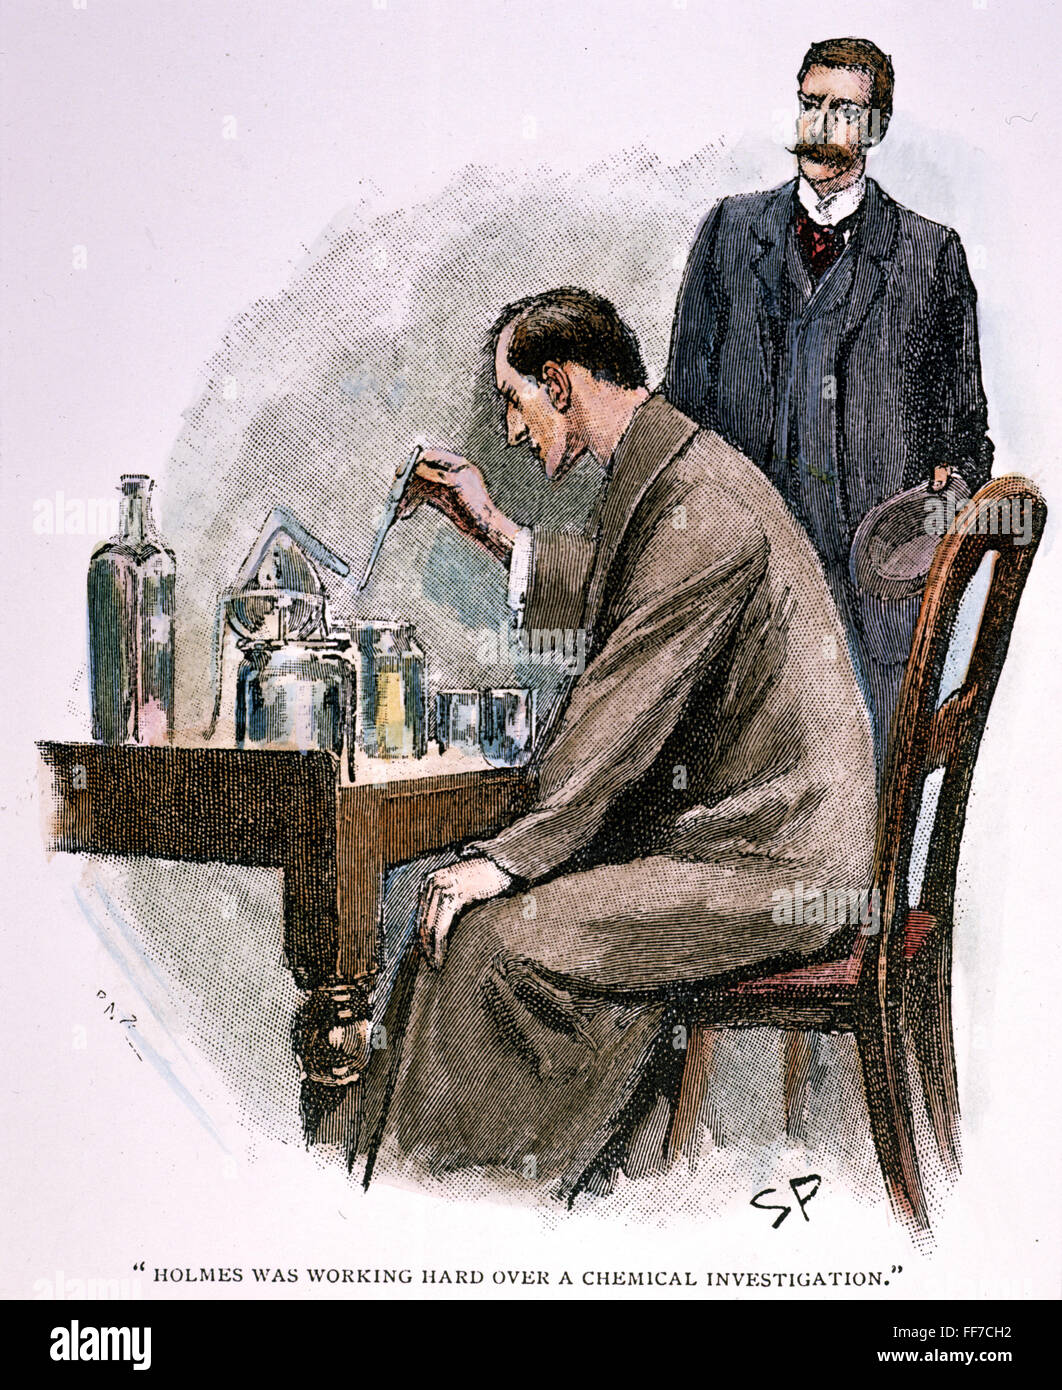 SHERLOCK HOLMES. /nDr. John Watson Sherlock Holmes arbeitet hart über eine chemische Untersuchung zu beobachten. Zeichnung von Sidney Paget für Doyles "das Abenteuer der Flottenvertrag" 1893. Stockfoto